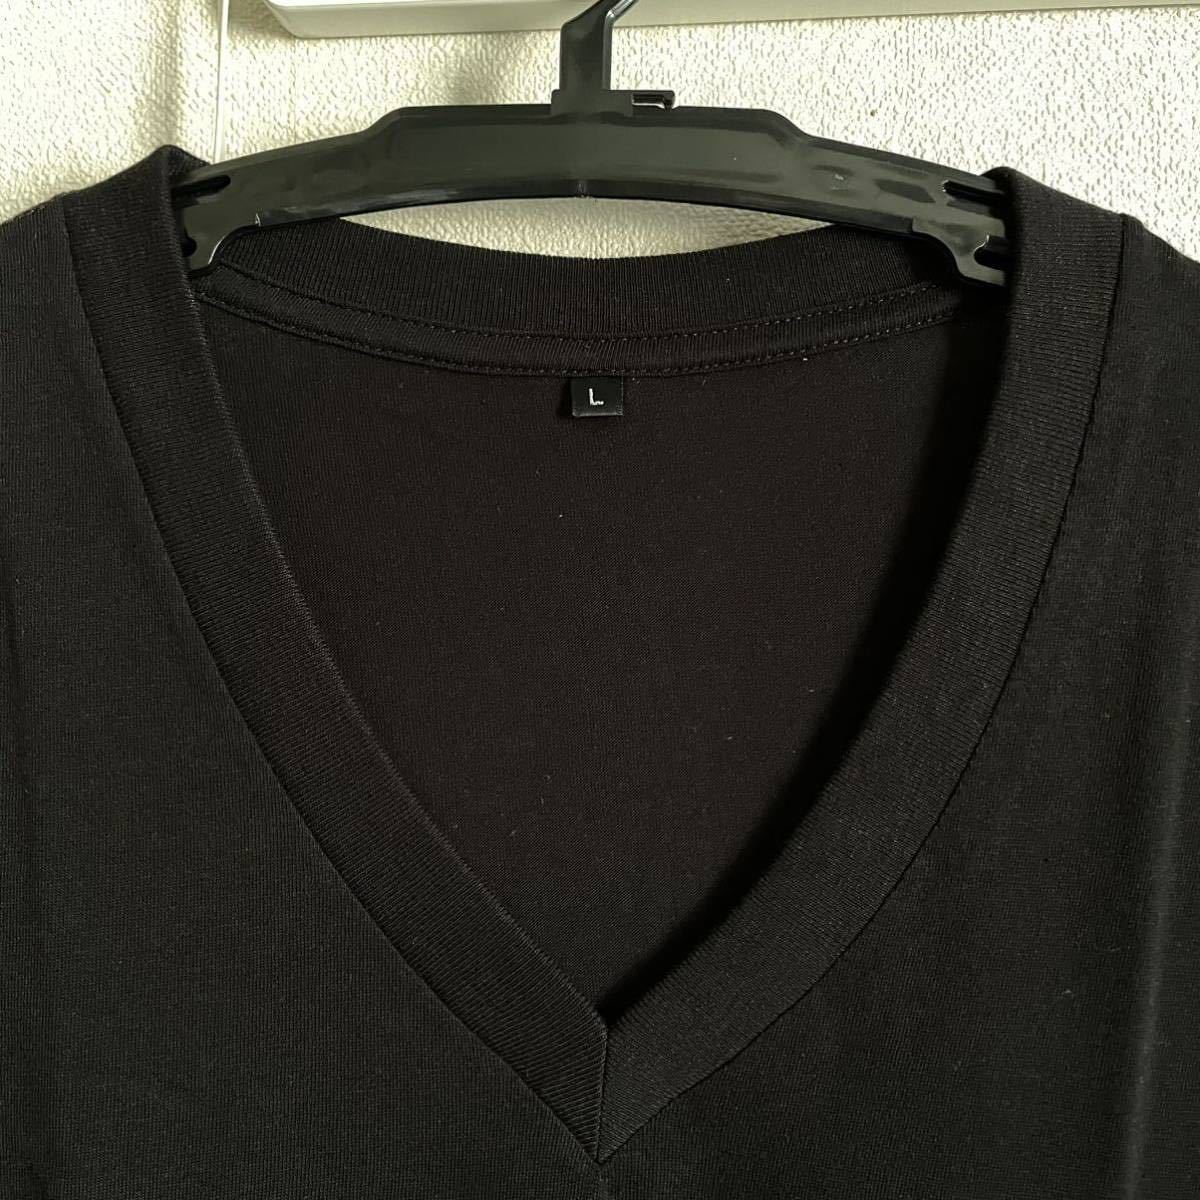 10枚組 L VネックTシャツ 綿100% 黒 ブラック V首 半袖 Tシャツ アンダーシャツ 男性 紳士 下着 メンズ インナー シャツ 半袖シャツ 定番♪_画像3